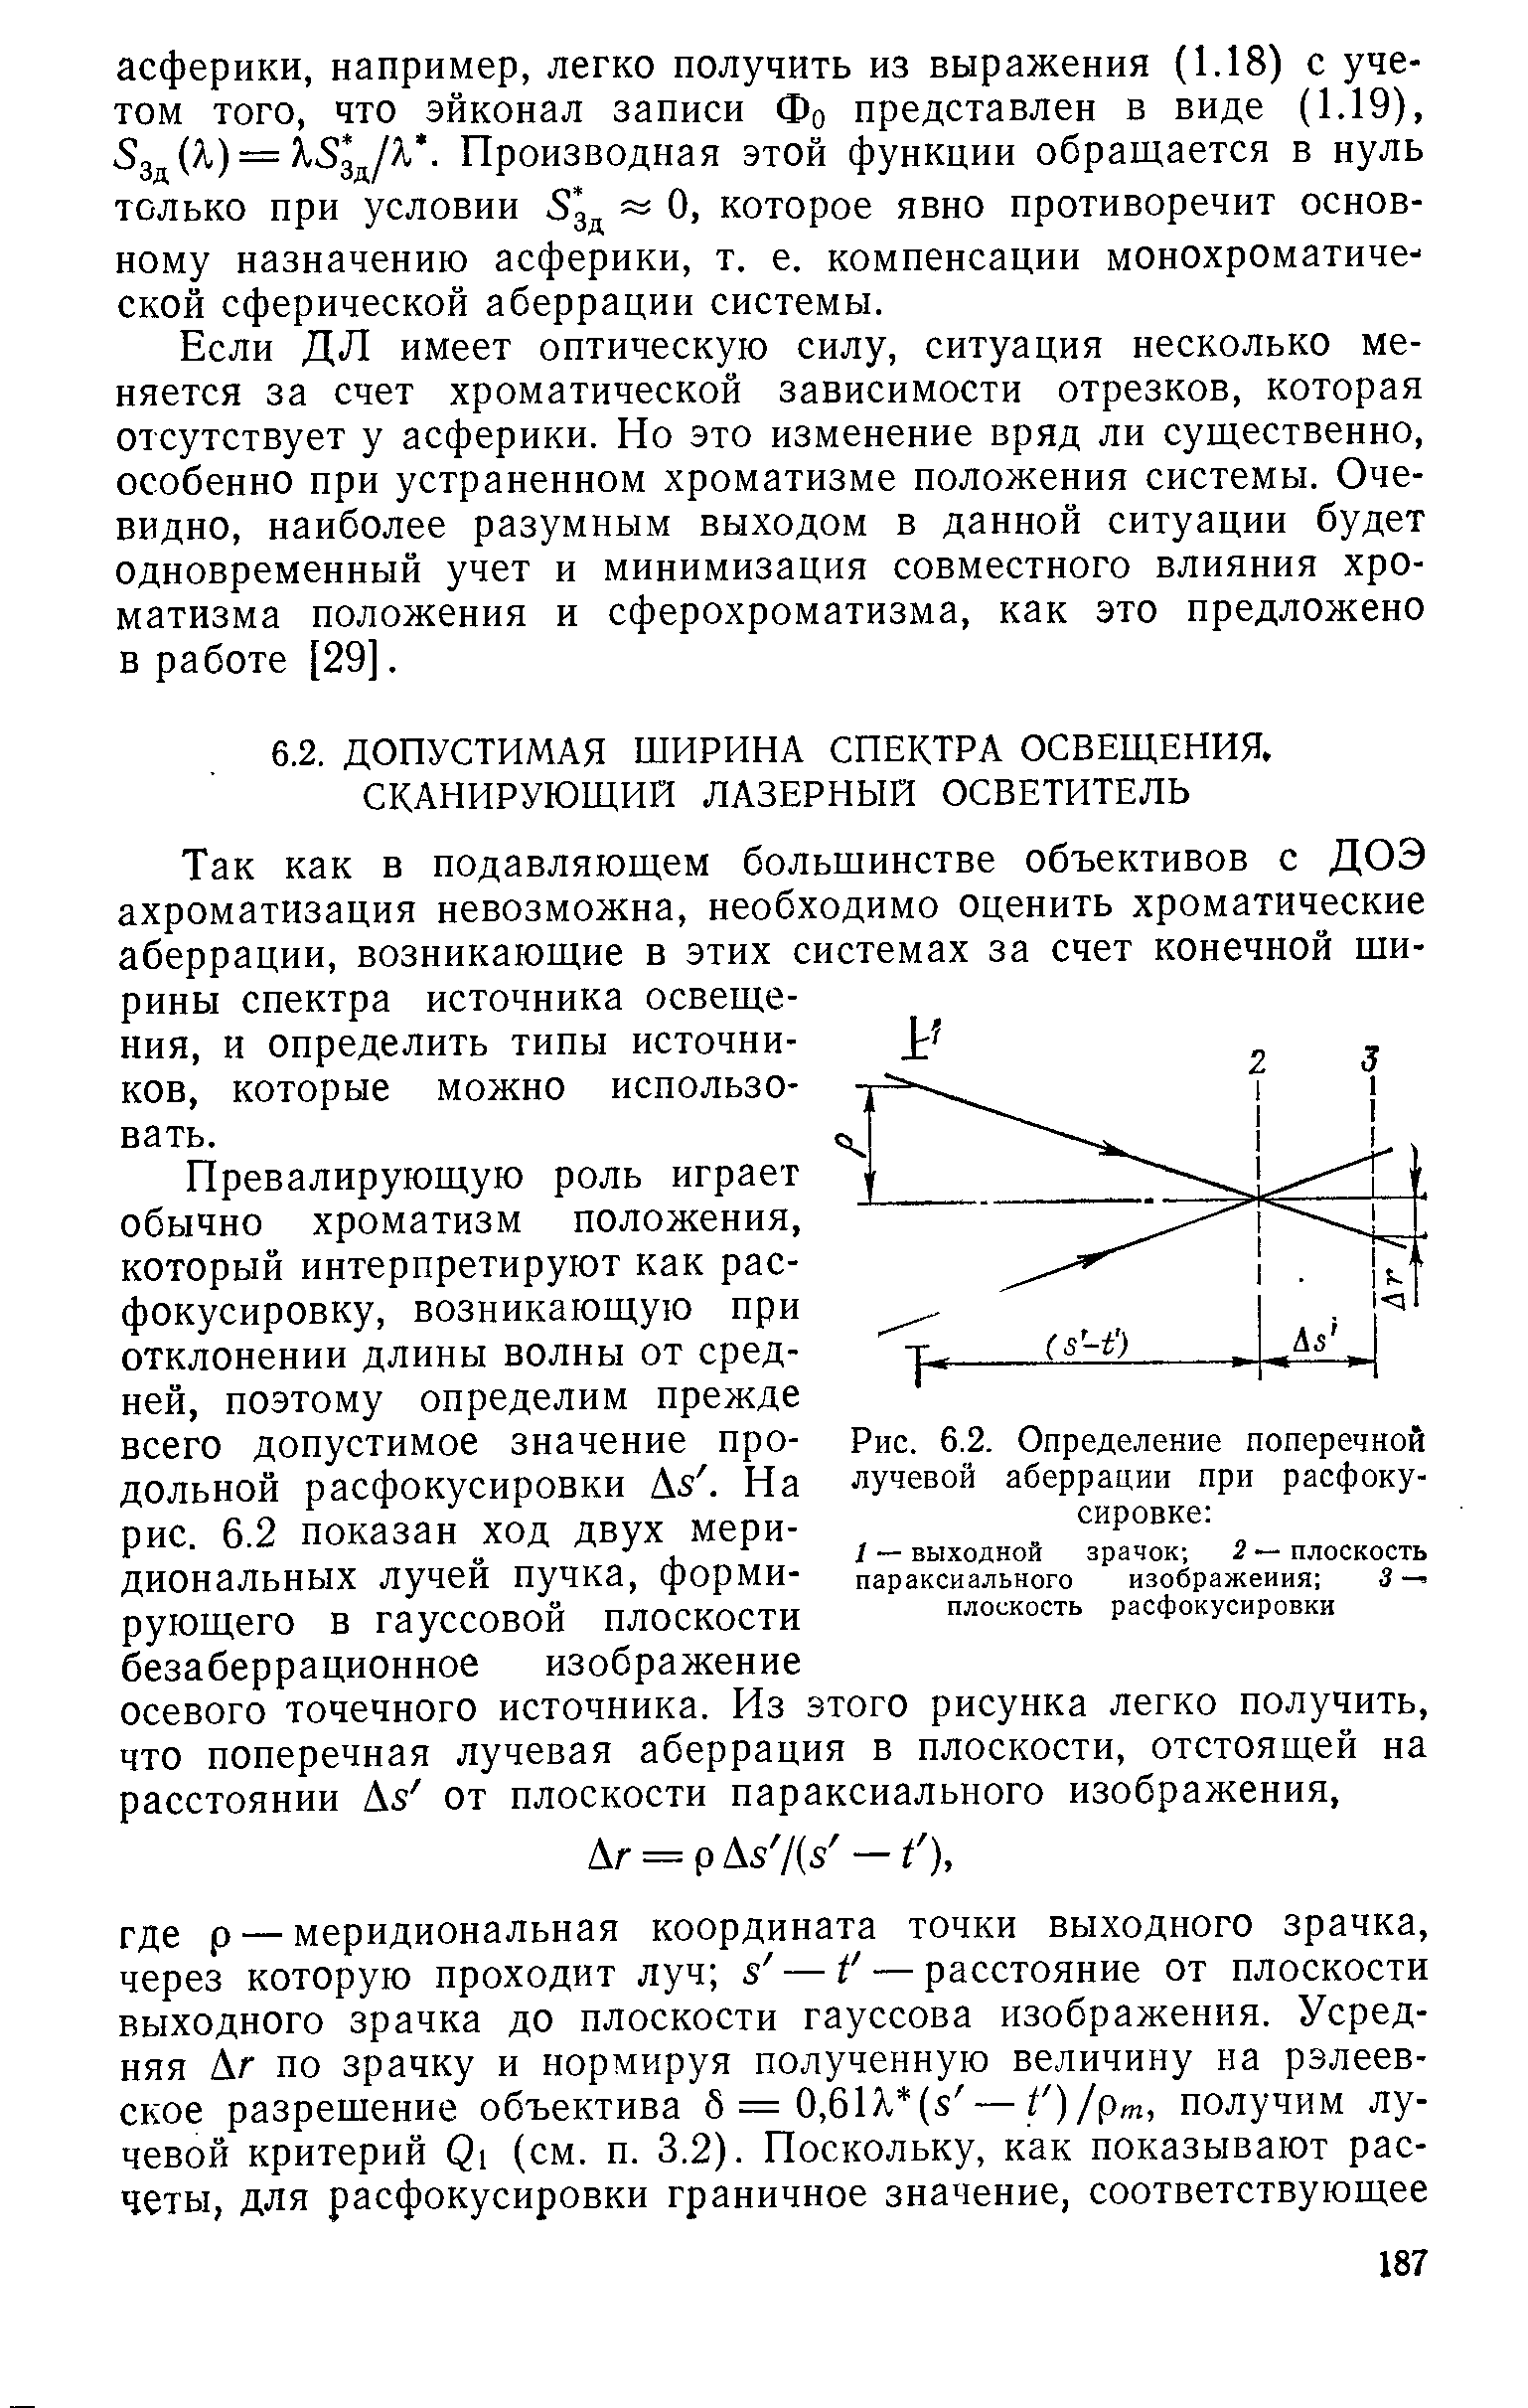 Рис. 6.2. Определение поперечной лучевой аберрации при расфокусировке 
